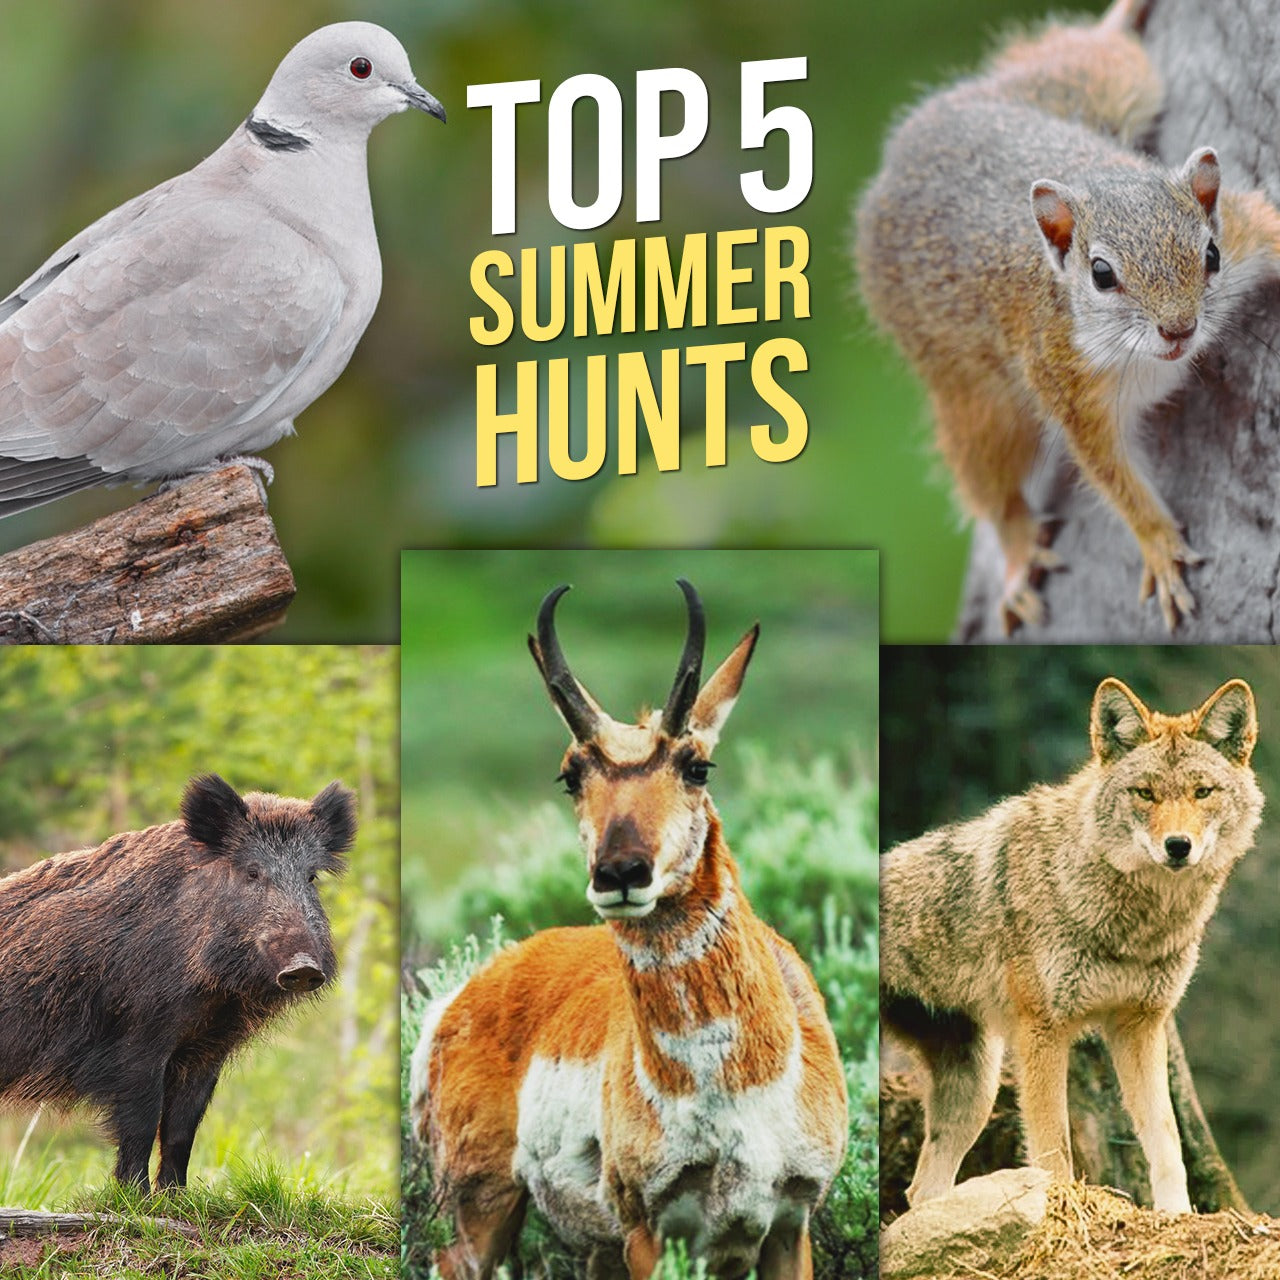 Top 5 Summer Hunts